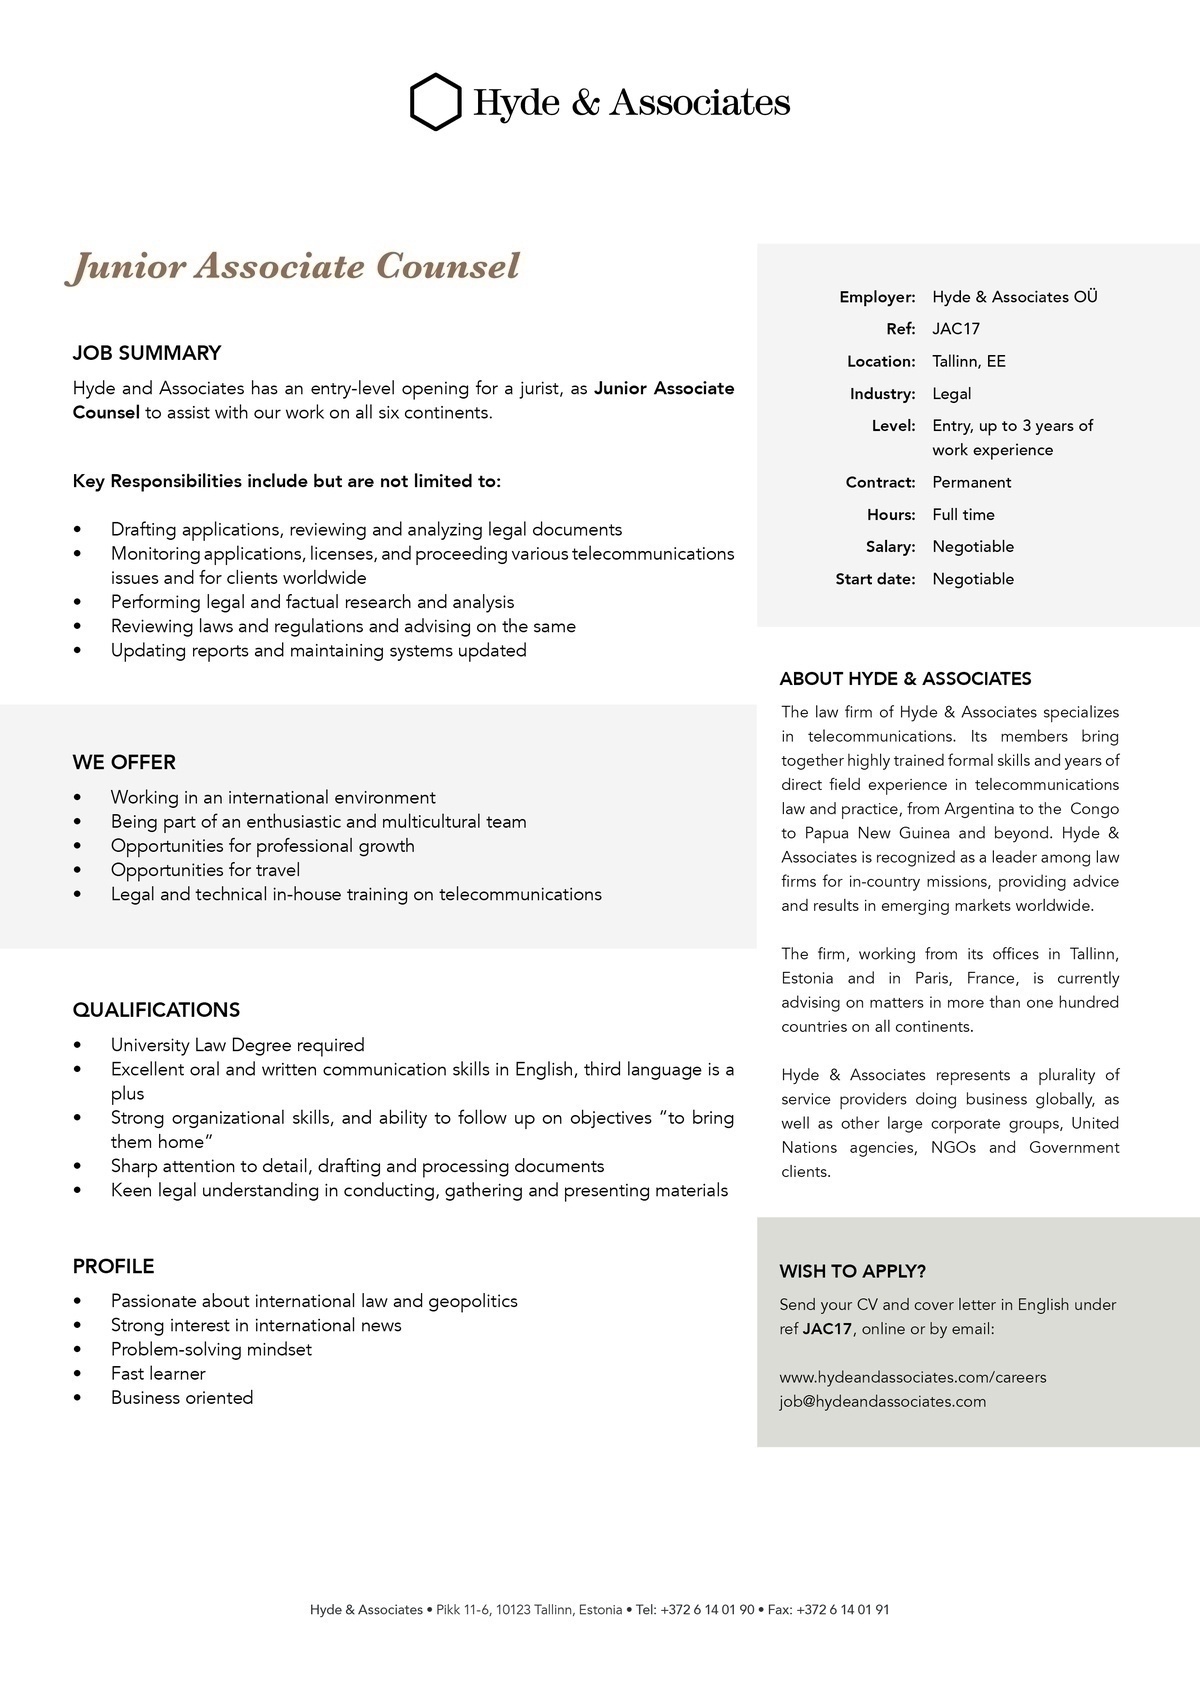 Hyde & Associates, OU Junior Associate Counsel